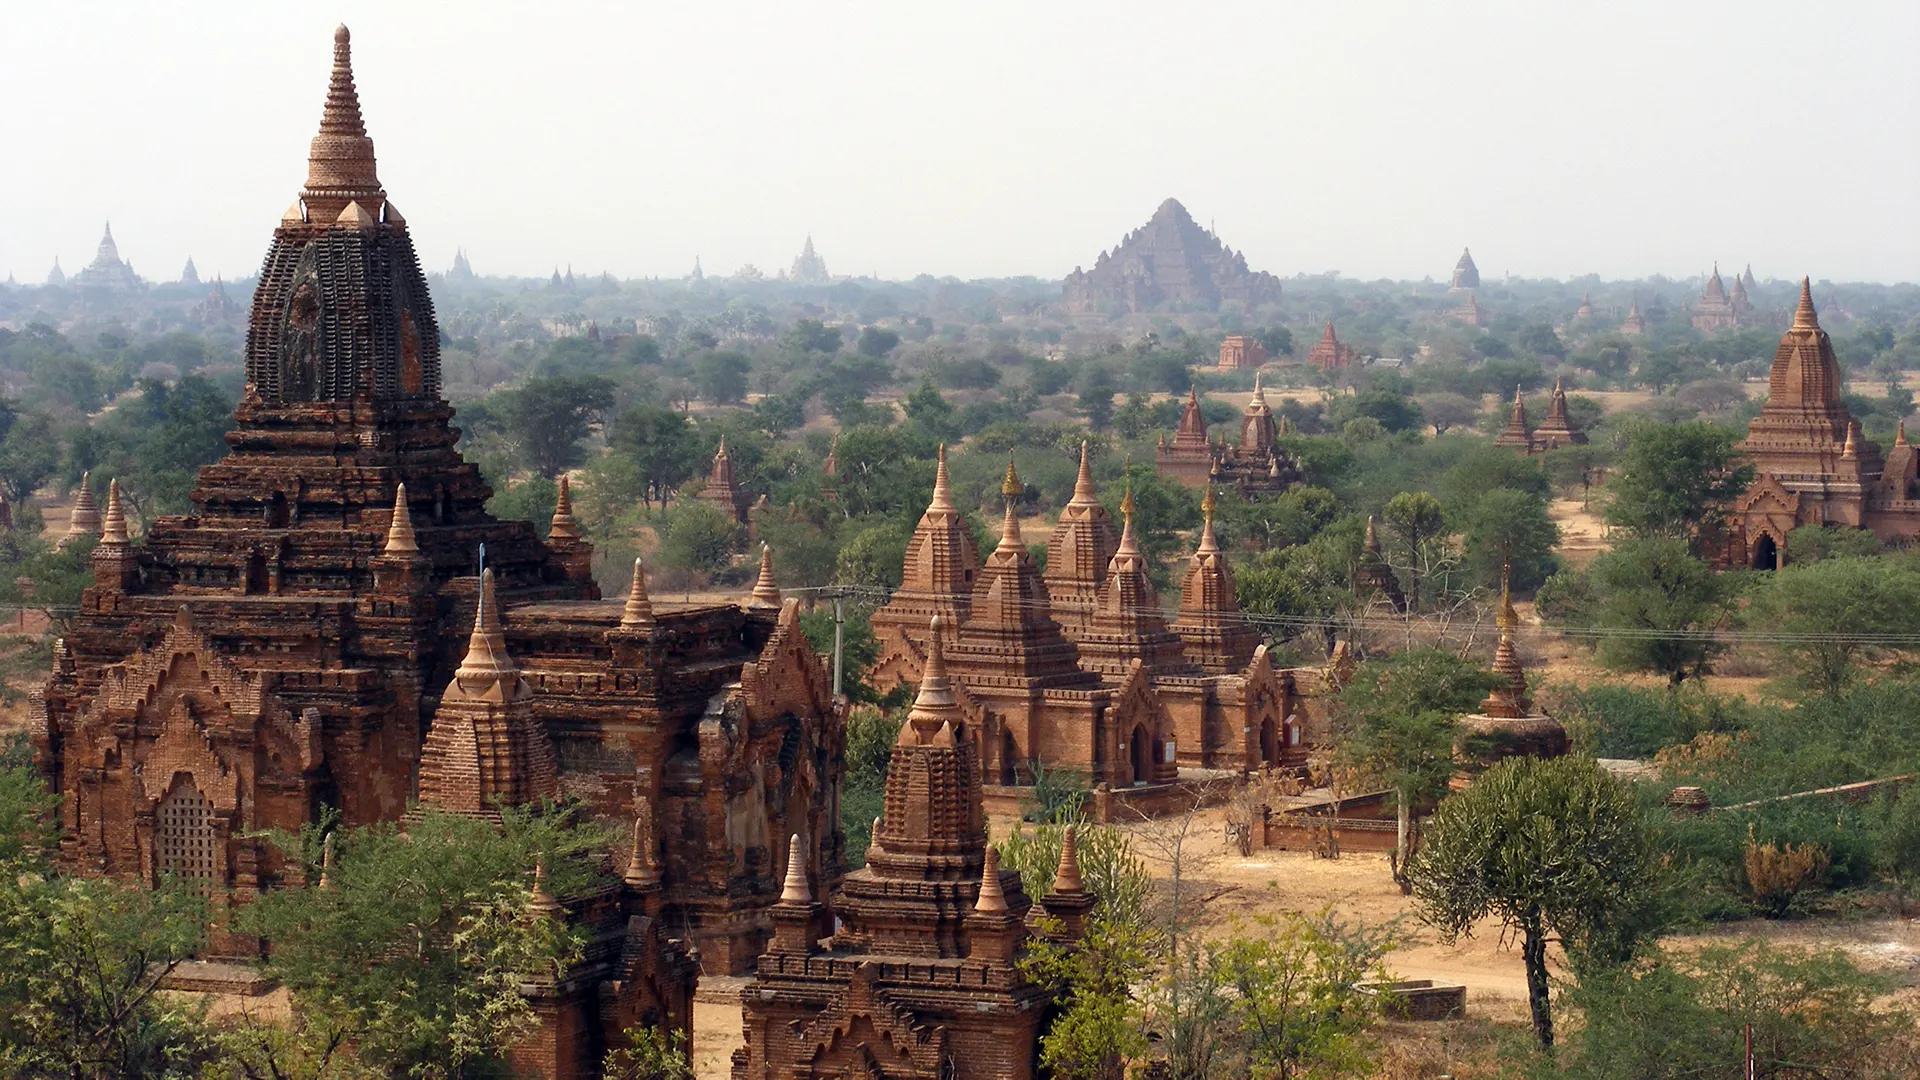 Les temples de Bagan - Birmanie (Myanmar)